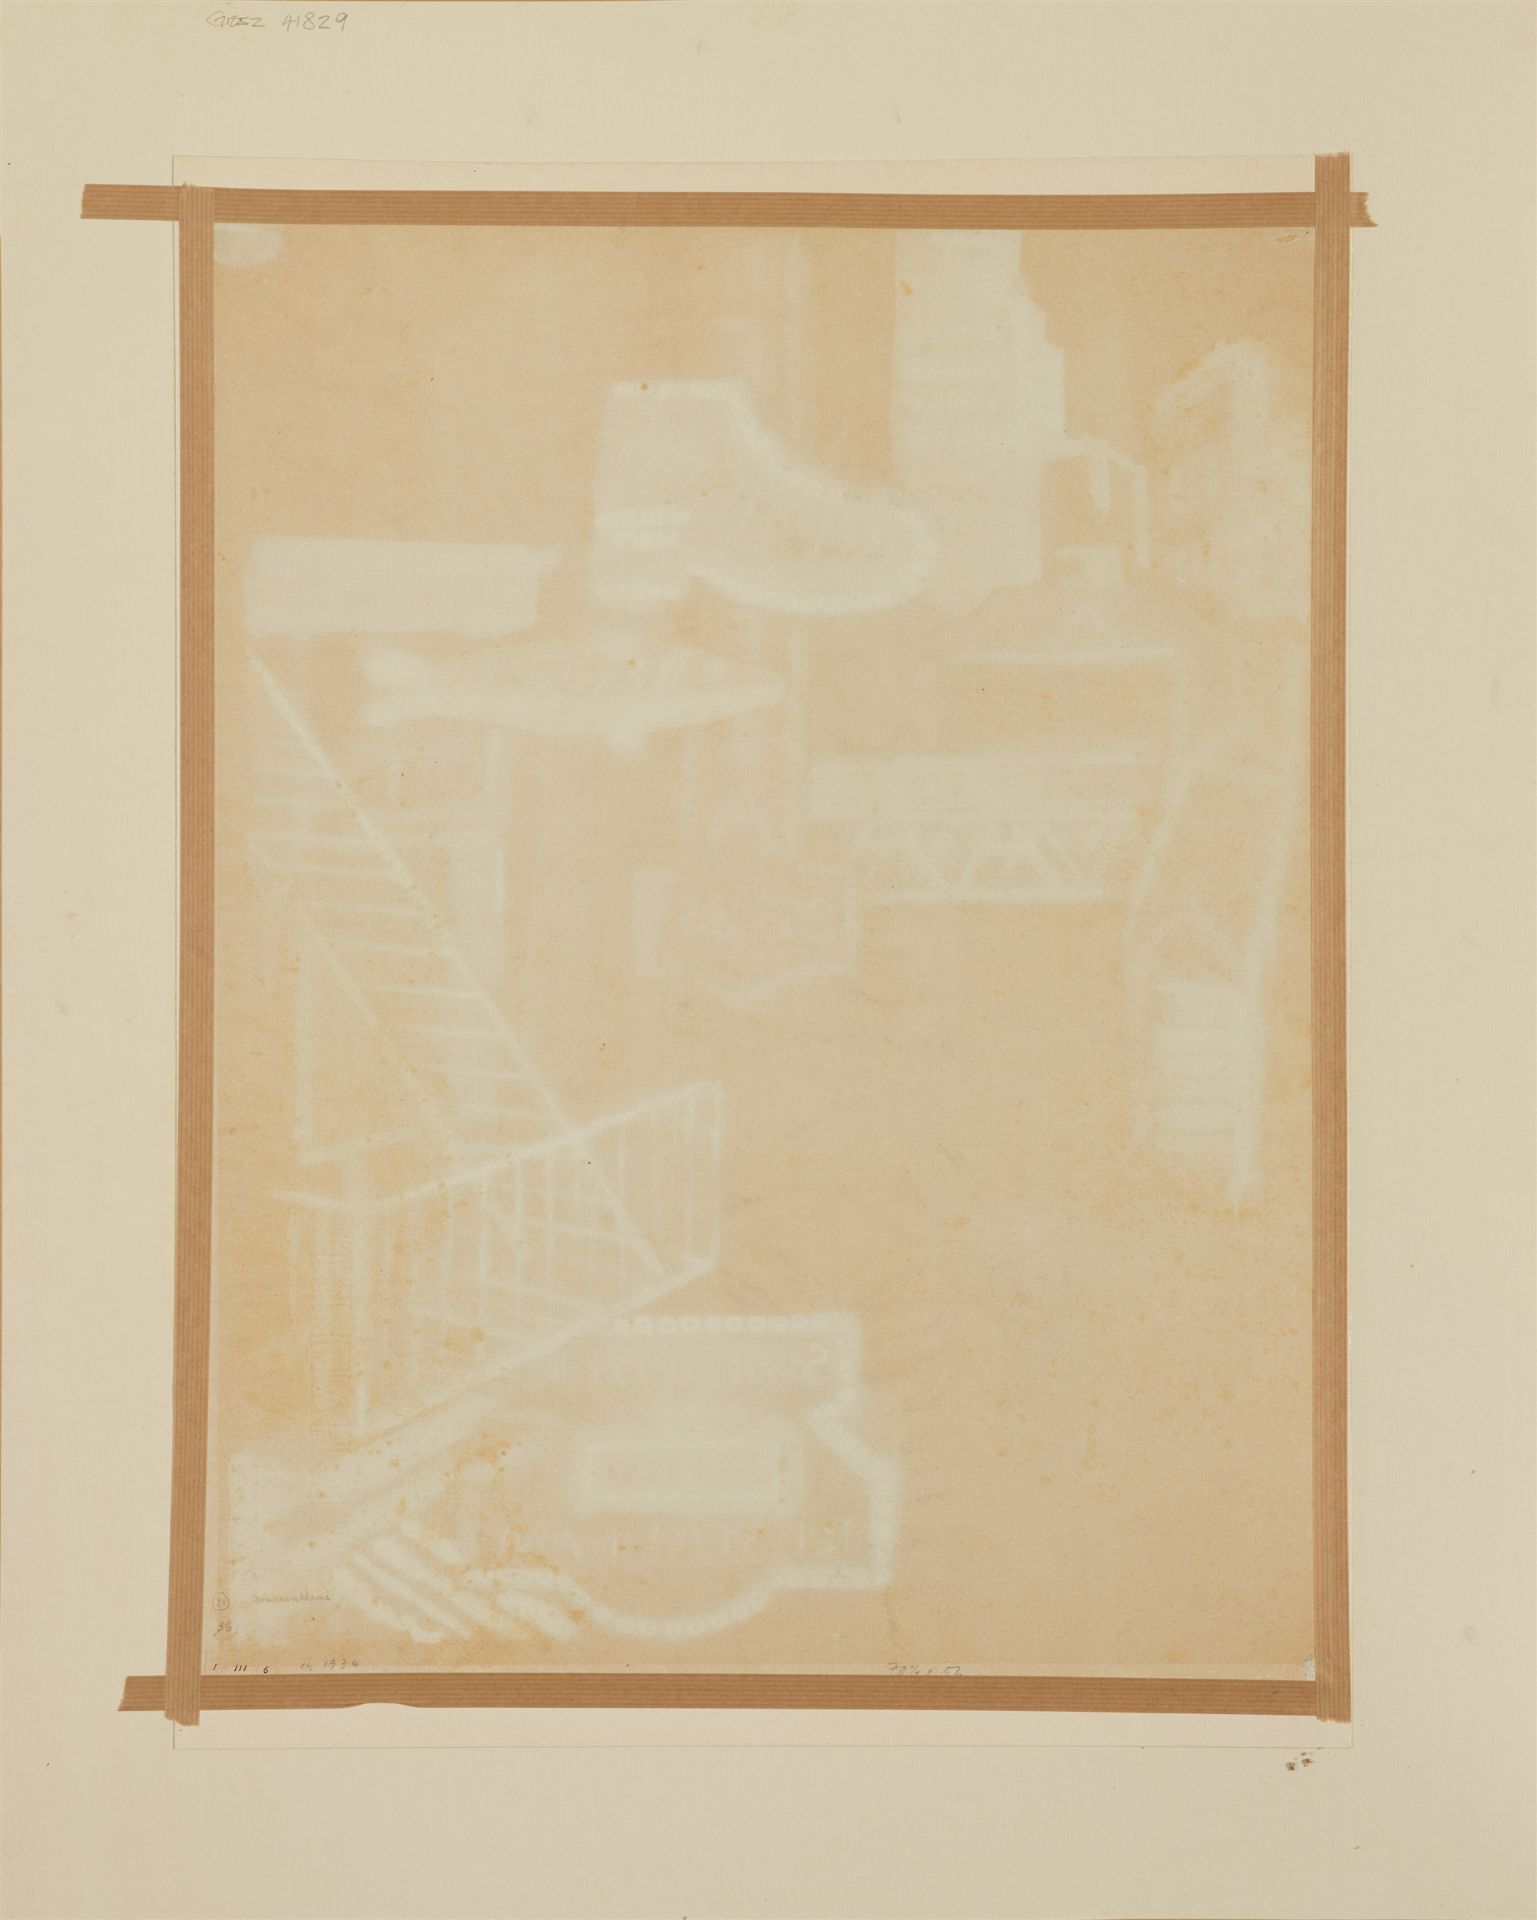 George Grosz, Manhattan Strassenreklame - Image 2 of 2